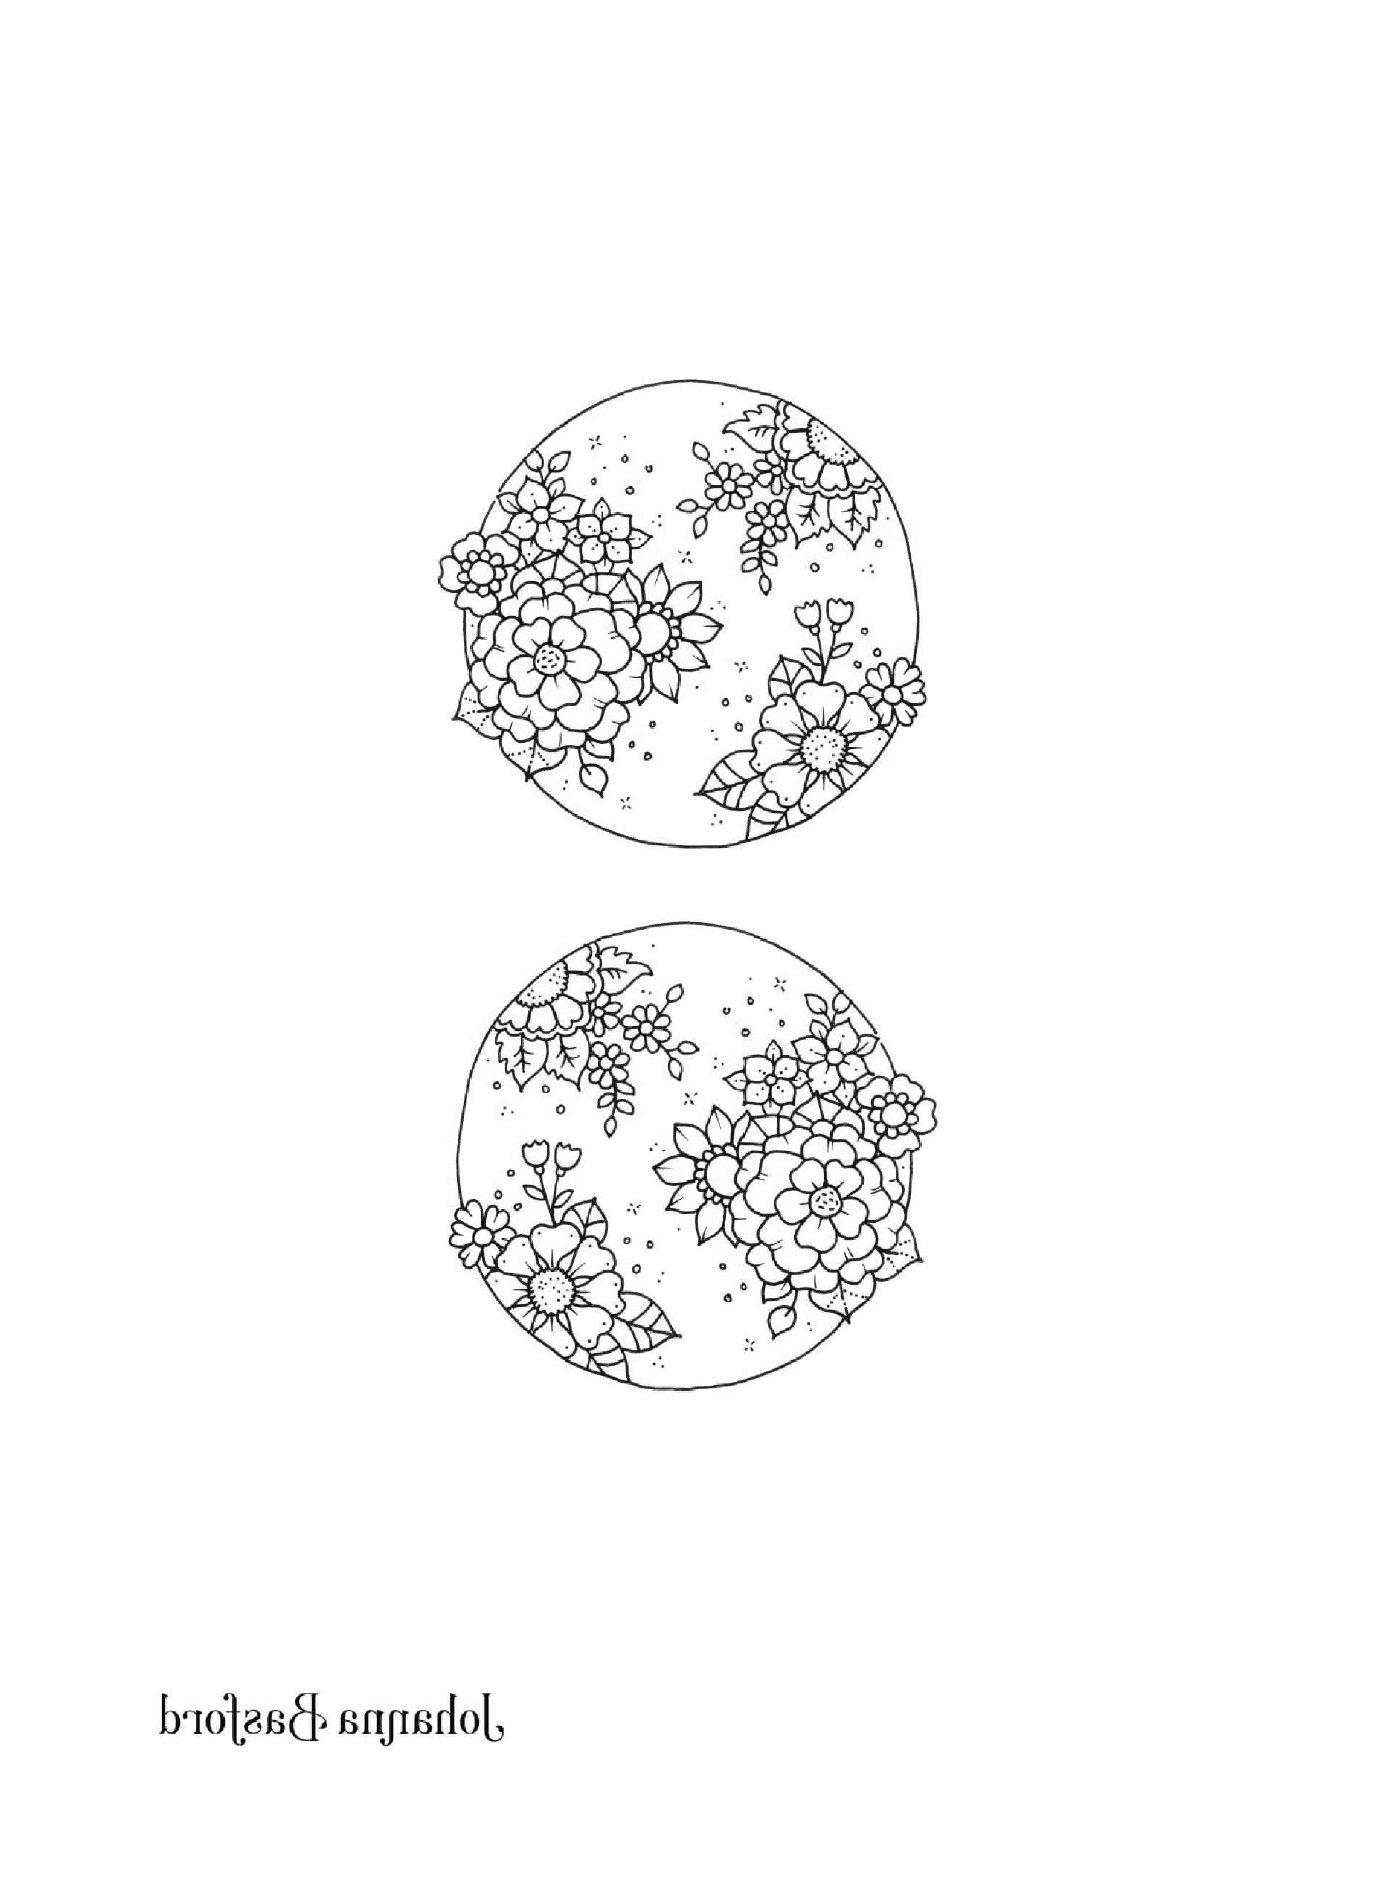  Dos dibujos en blanco y negro de un globo terráqueo 